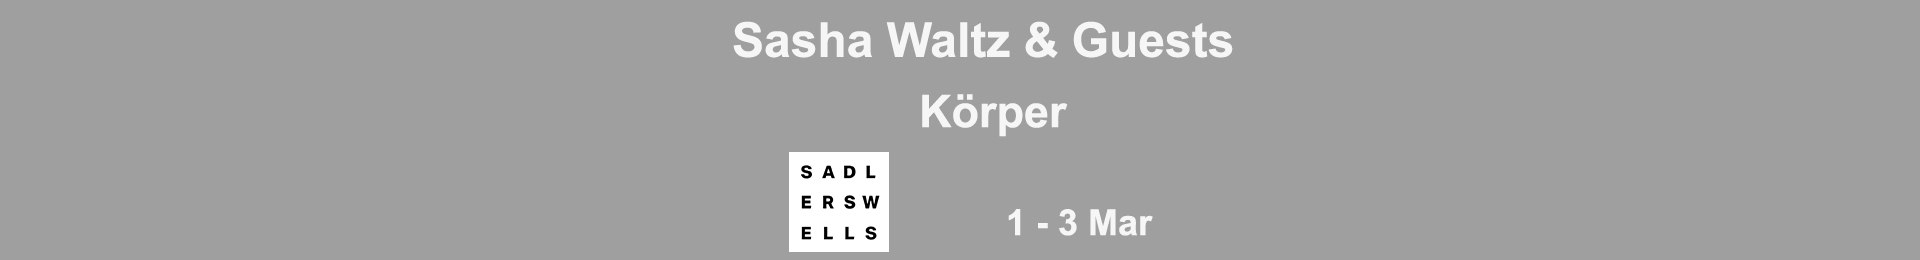 Sasha Waltz & Guests: Körper banner image